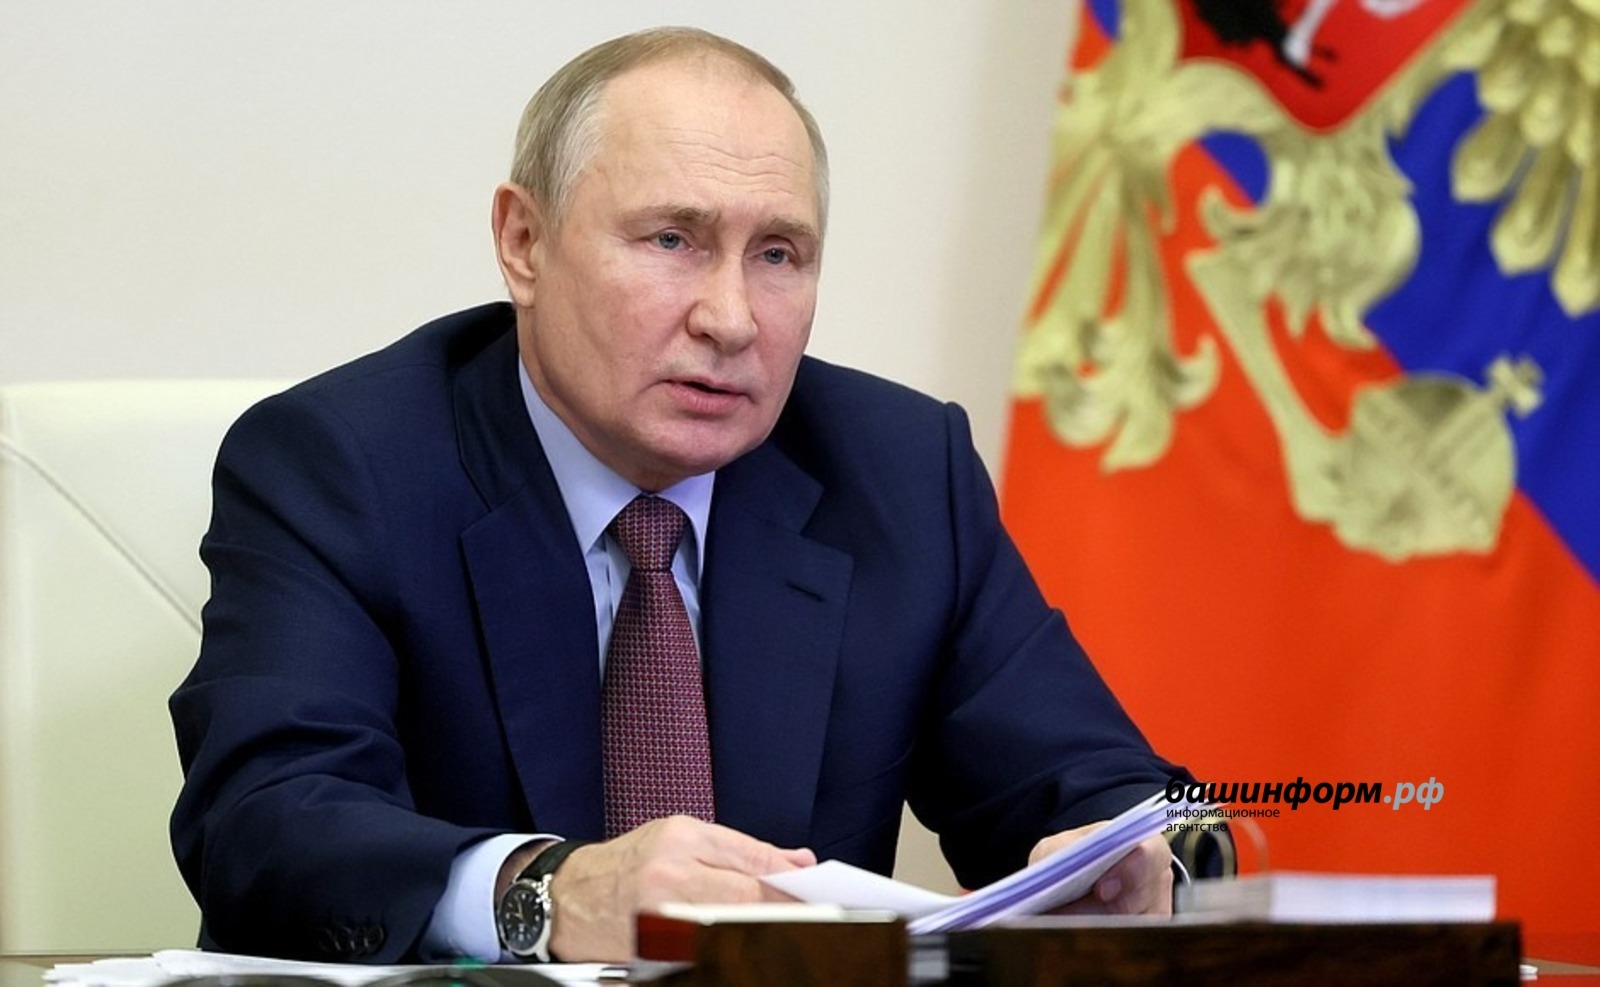 Владимир Путин сообщил остроительстве межвузовского кампуса в Уфе